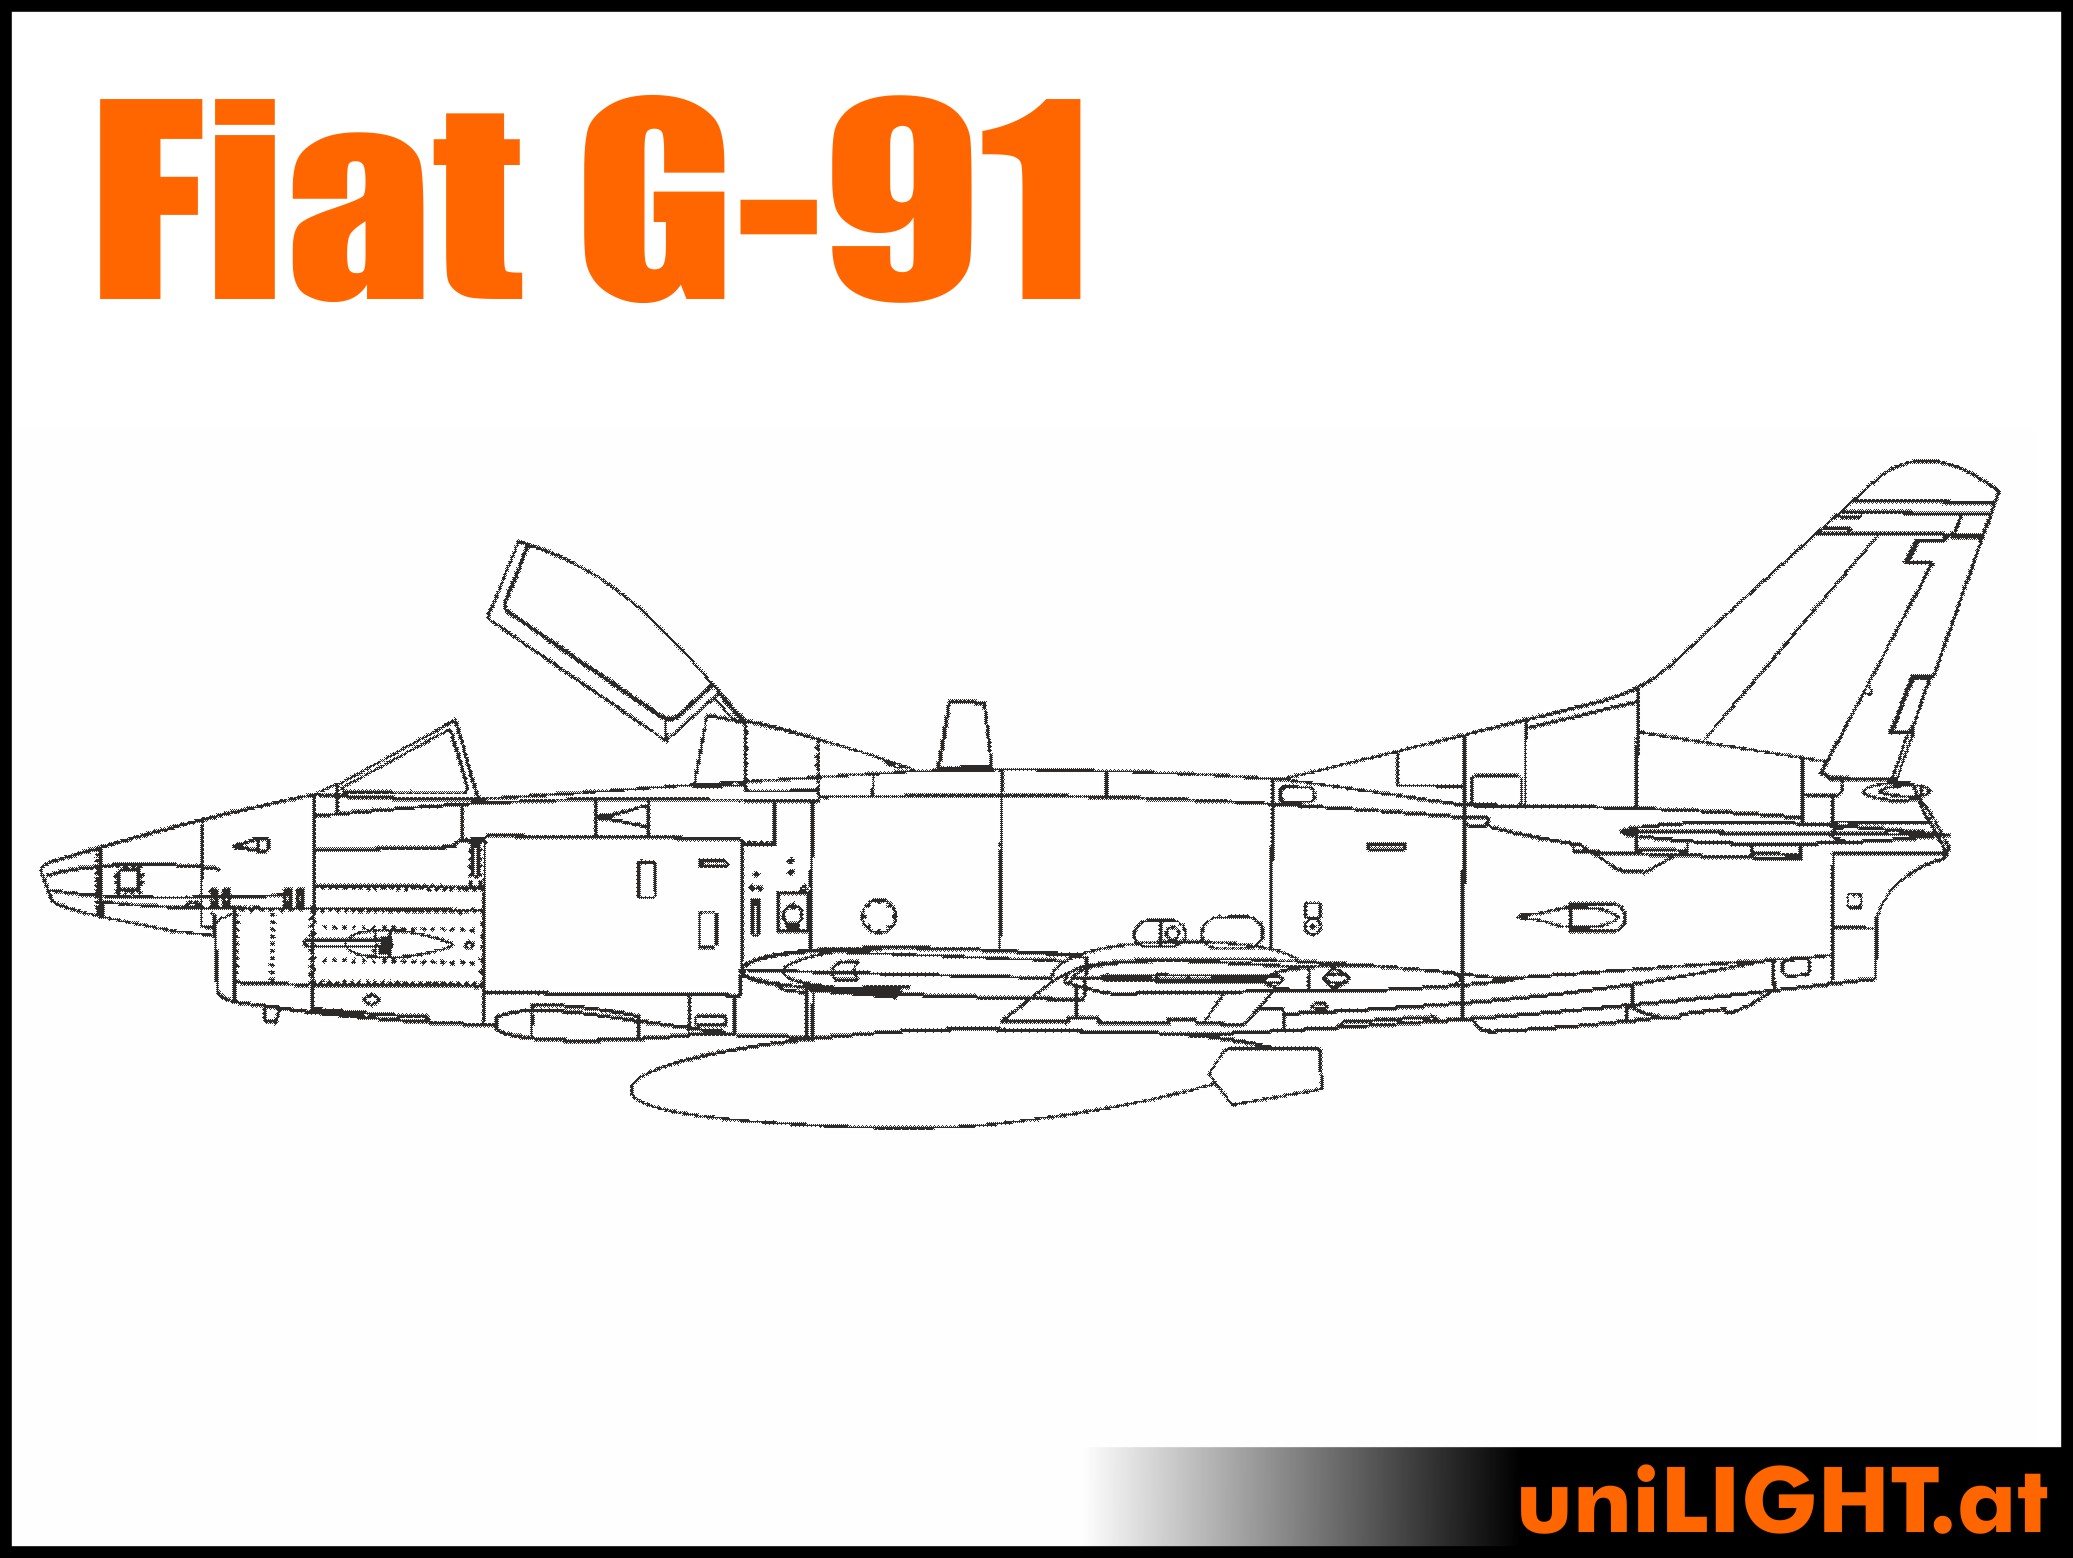 Fiat G91